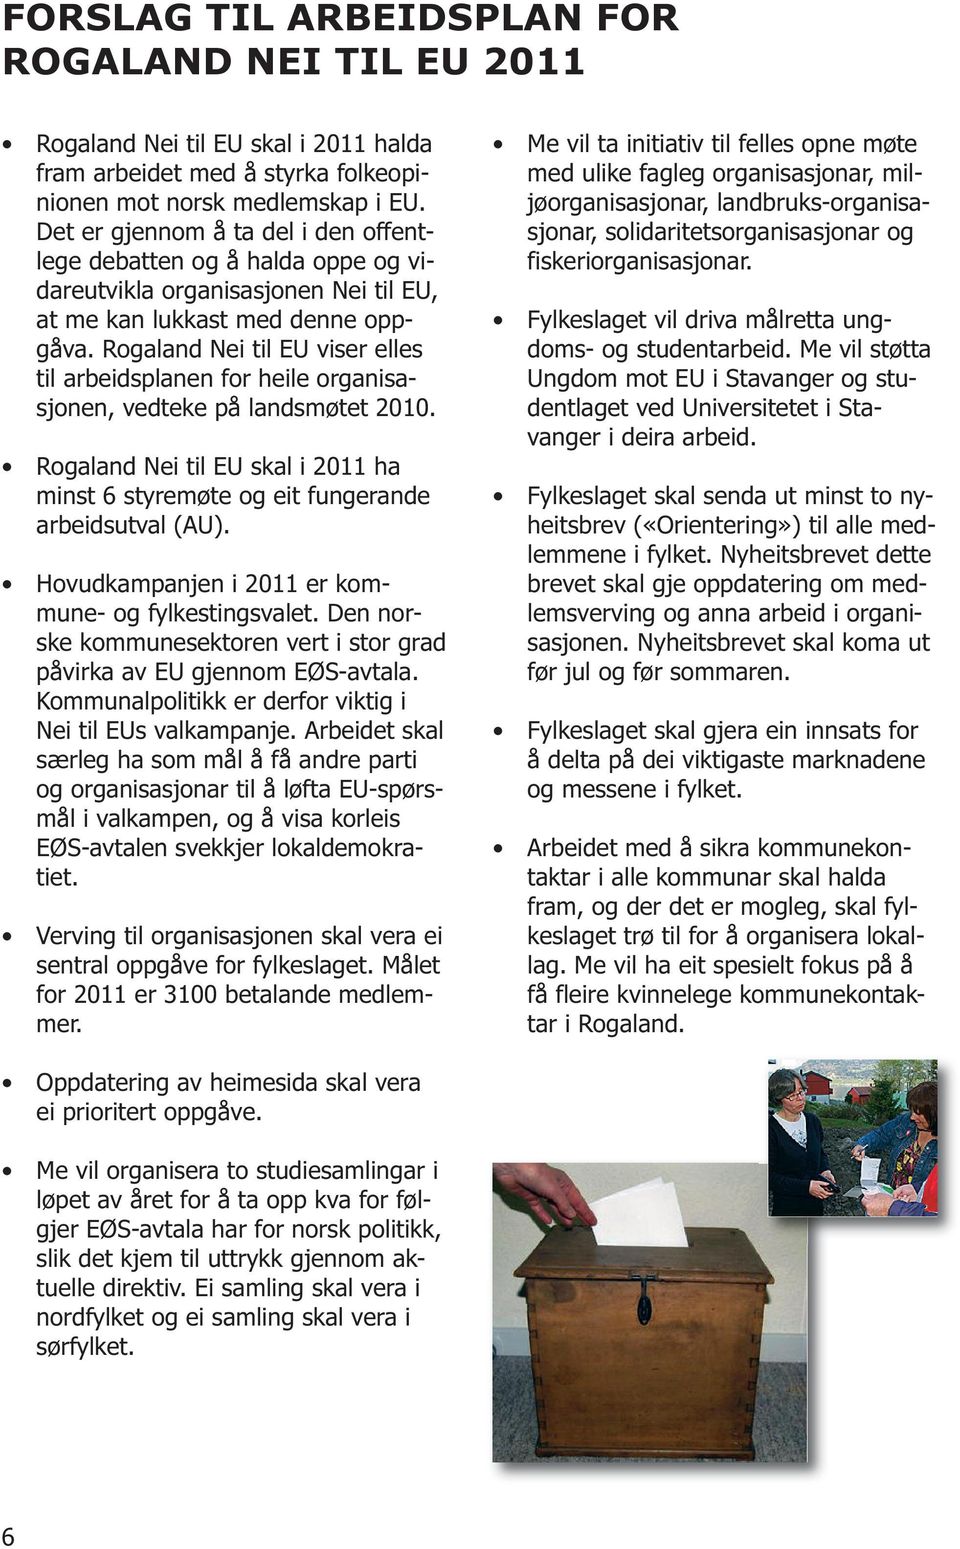 Rogaland Nei til EU viser elles til arbeidsplanen for heile organisasjonen, vedteke på landsmøtet 2010. Rogaland Nei til EU skal i 2011 ha minst 6 styremøte og eit fungerande arbeidsutval (AU).